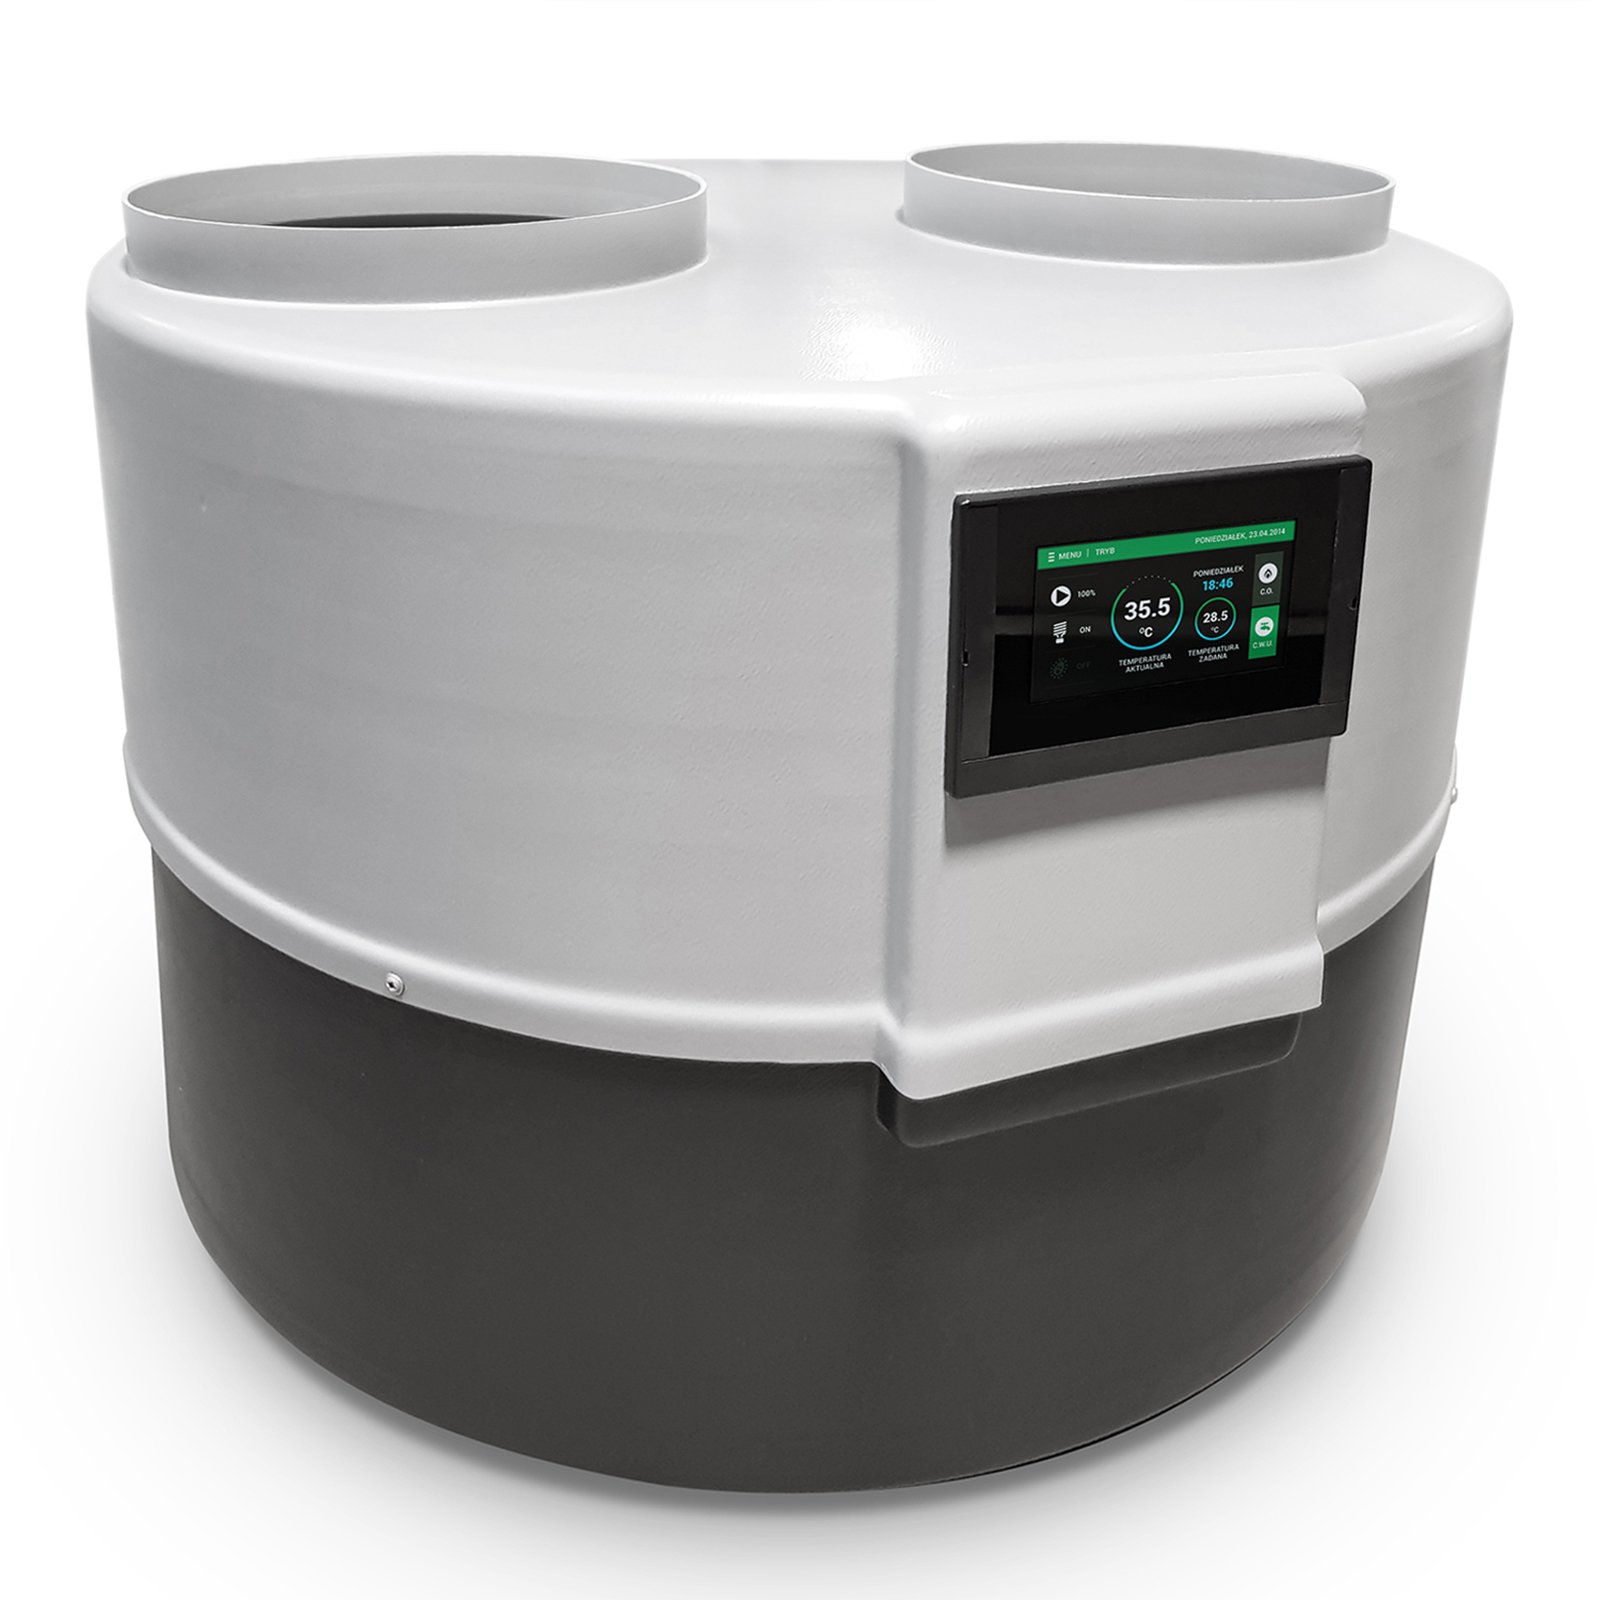 Bild von Warmwasser Wärmepumpe DROPS D4.1 - 2 kW mit Touchscreen Regelung, zur Warmwasserbereitung